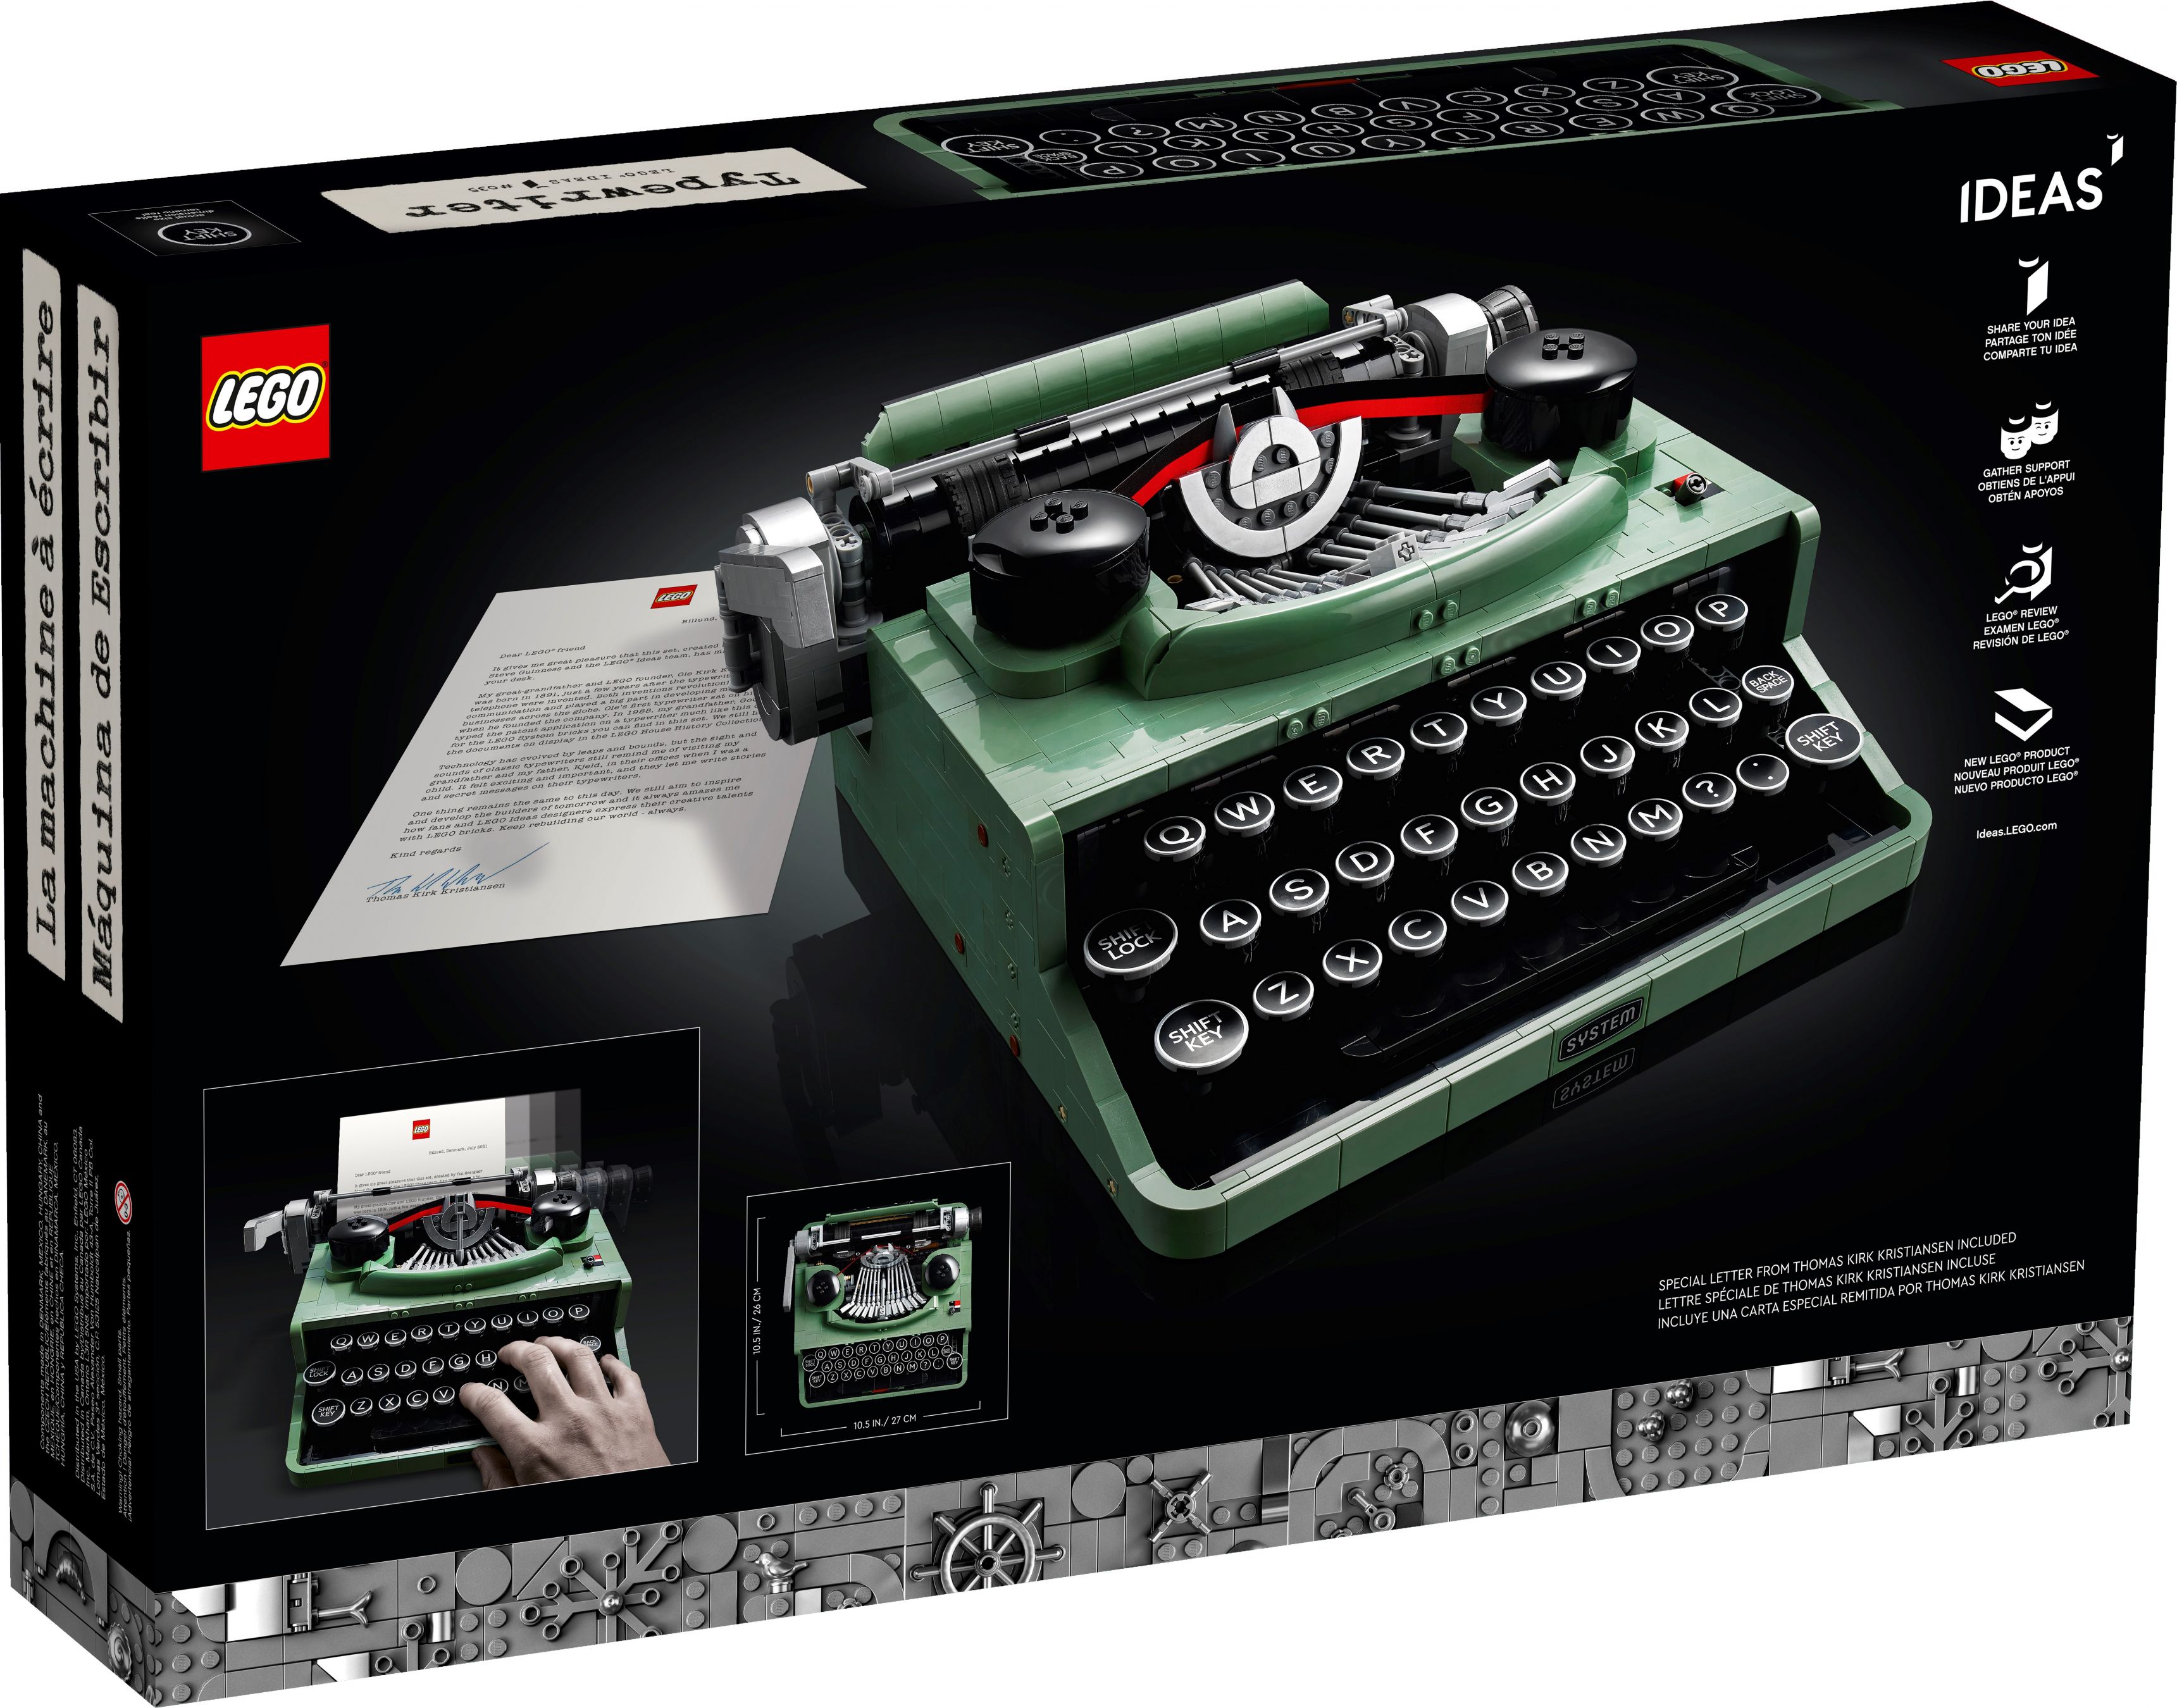 LEGO Ideas 21327 Schreibmaschine LEGO_21327_alt34.jpg